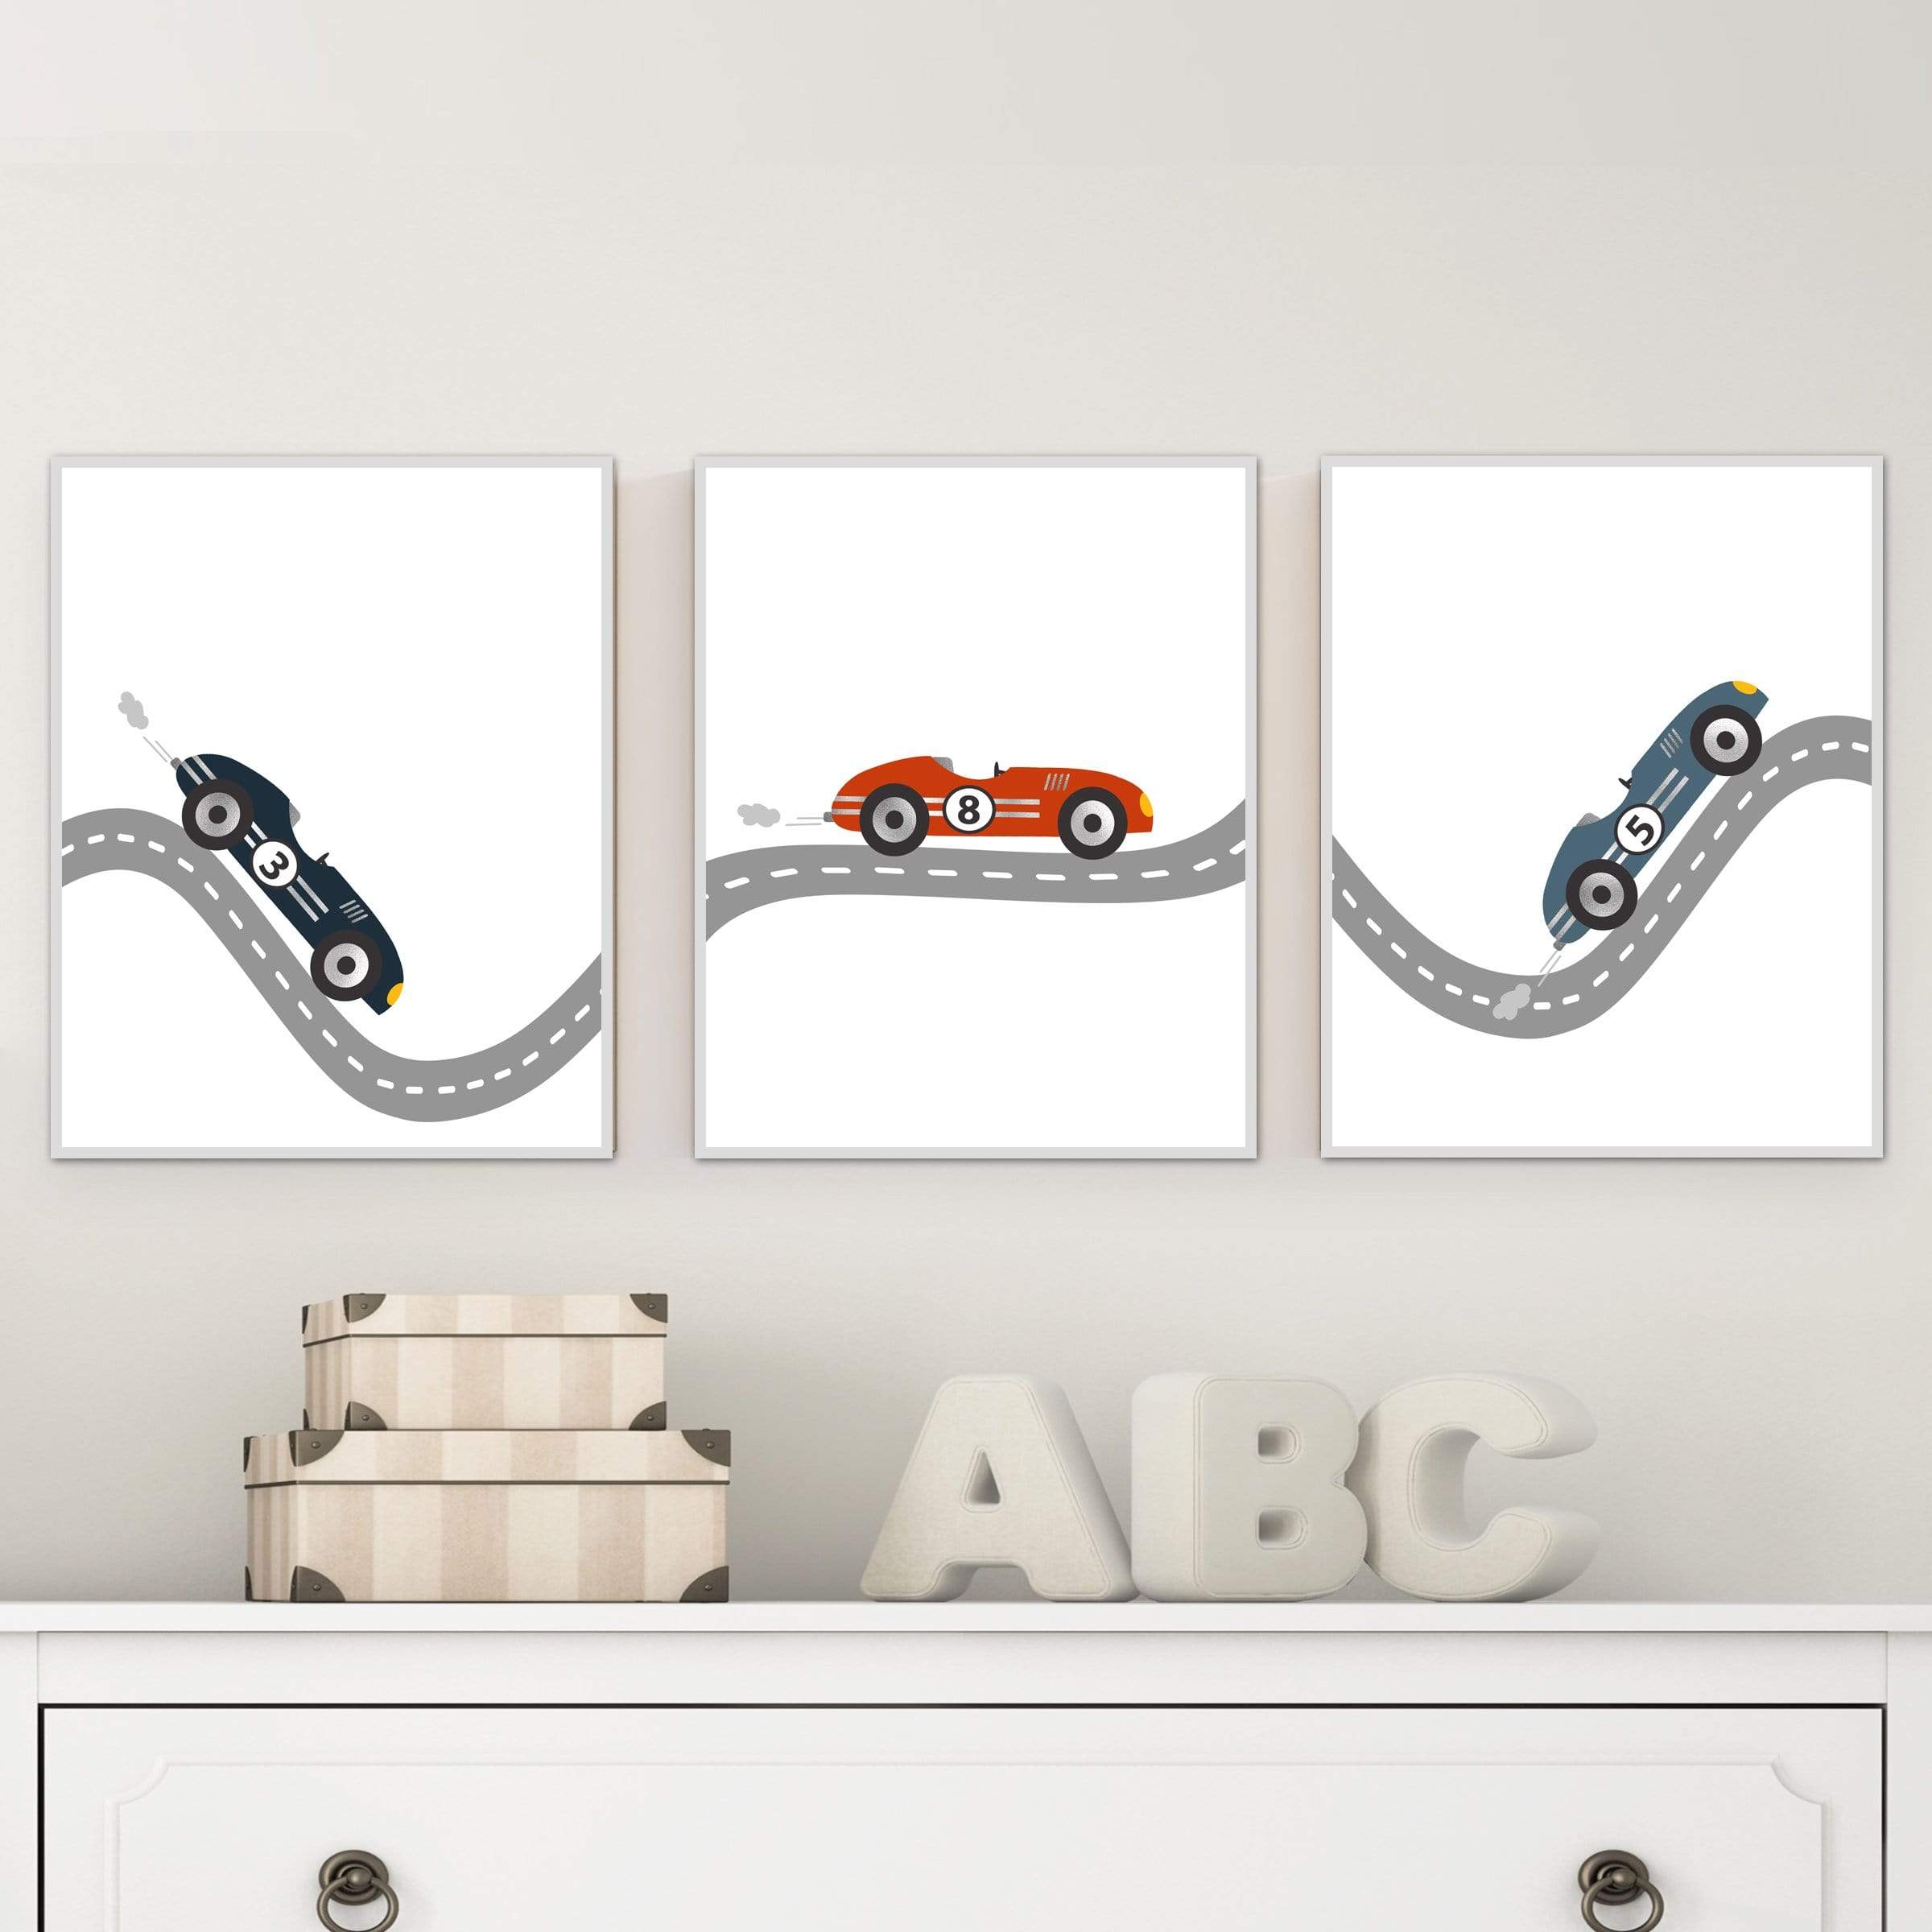 Race car wall art - Race car nursery - Race car boy room decor - car bedroom - Boys bedroom decor - Car nursery decor - Race car baby nursery art print baby nursery bedroom decor